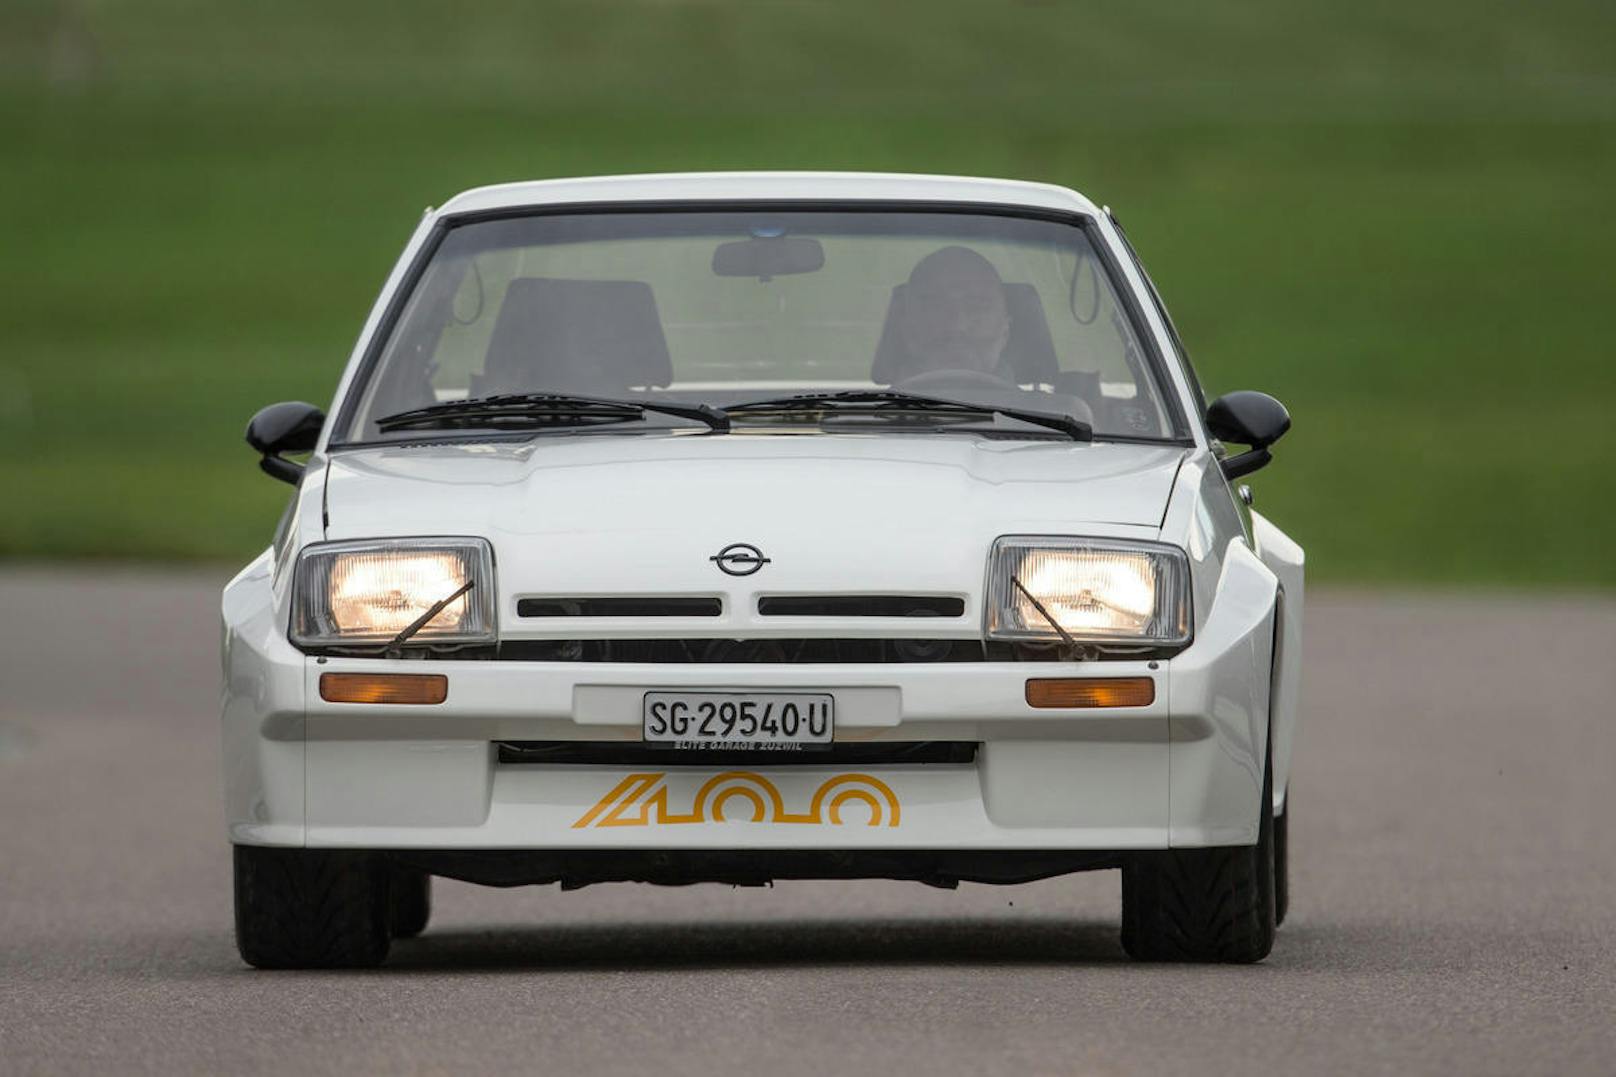 Die 144 PS beim Opel Manta 400 mögen sich heute nicht mehr nach viel anhören, aber damals war es die Leistungsspitze beim Opel-Coupé.